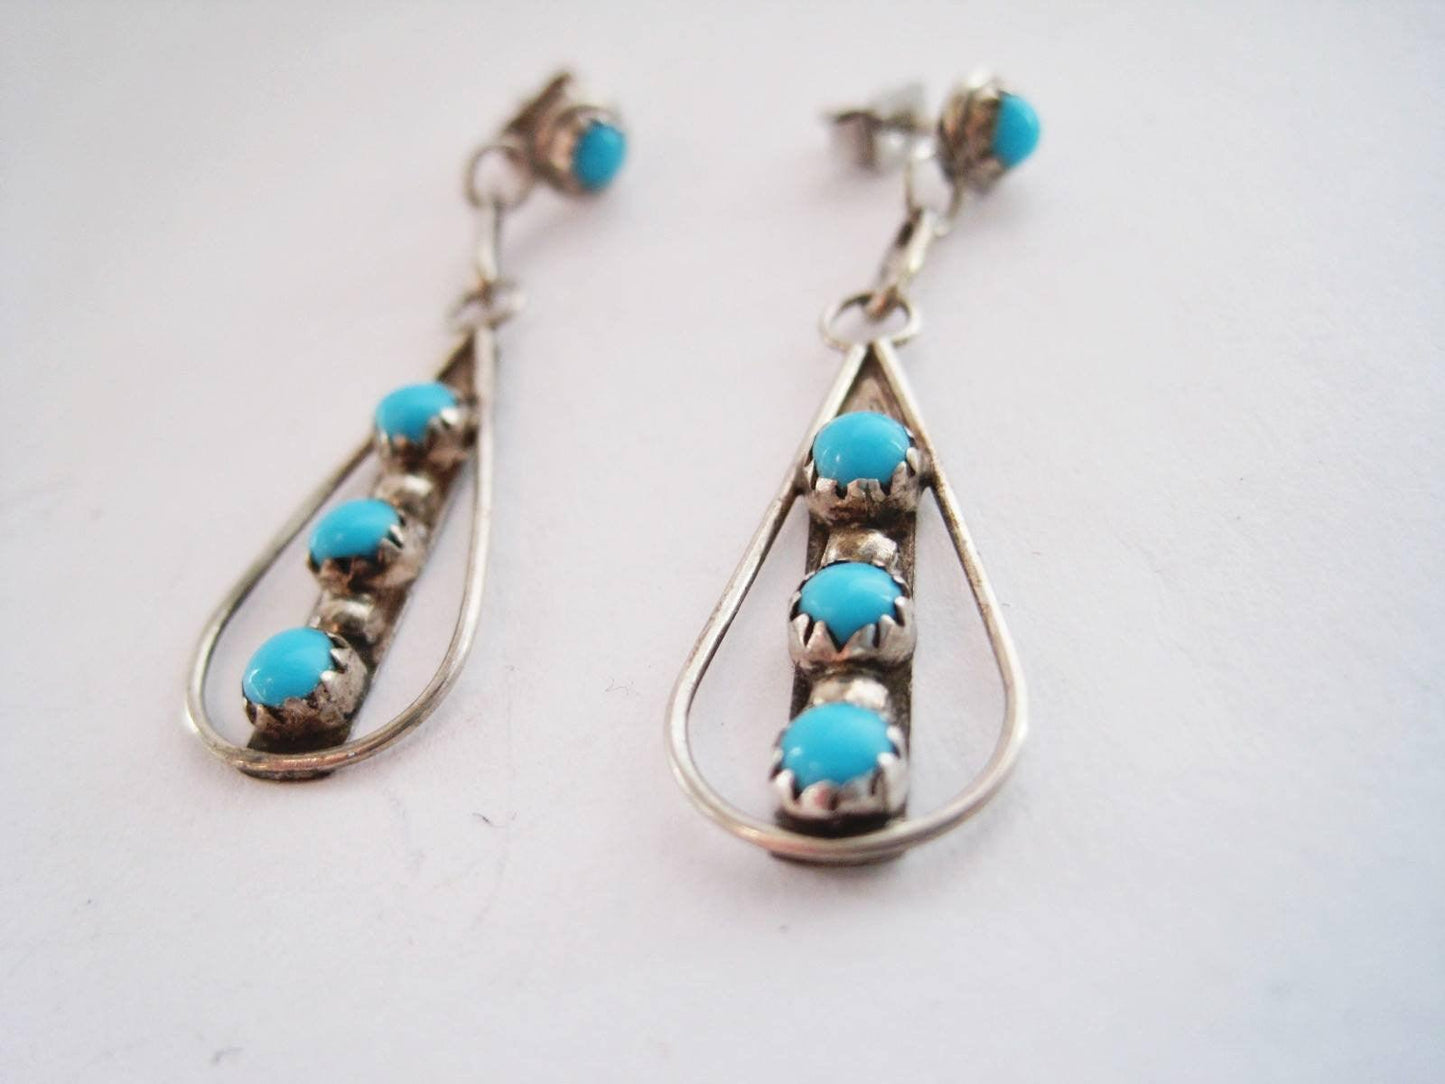 turquoise dangle earrings